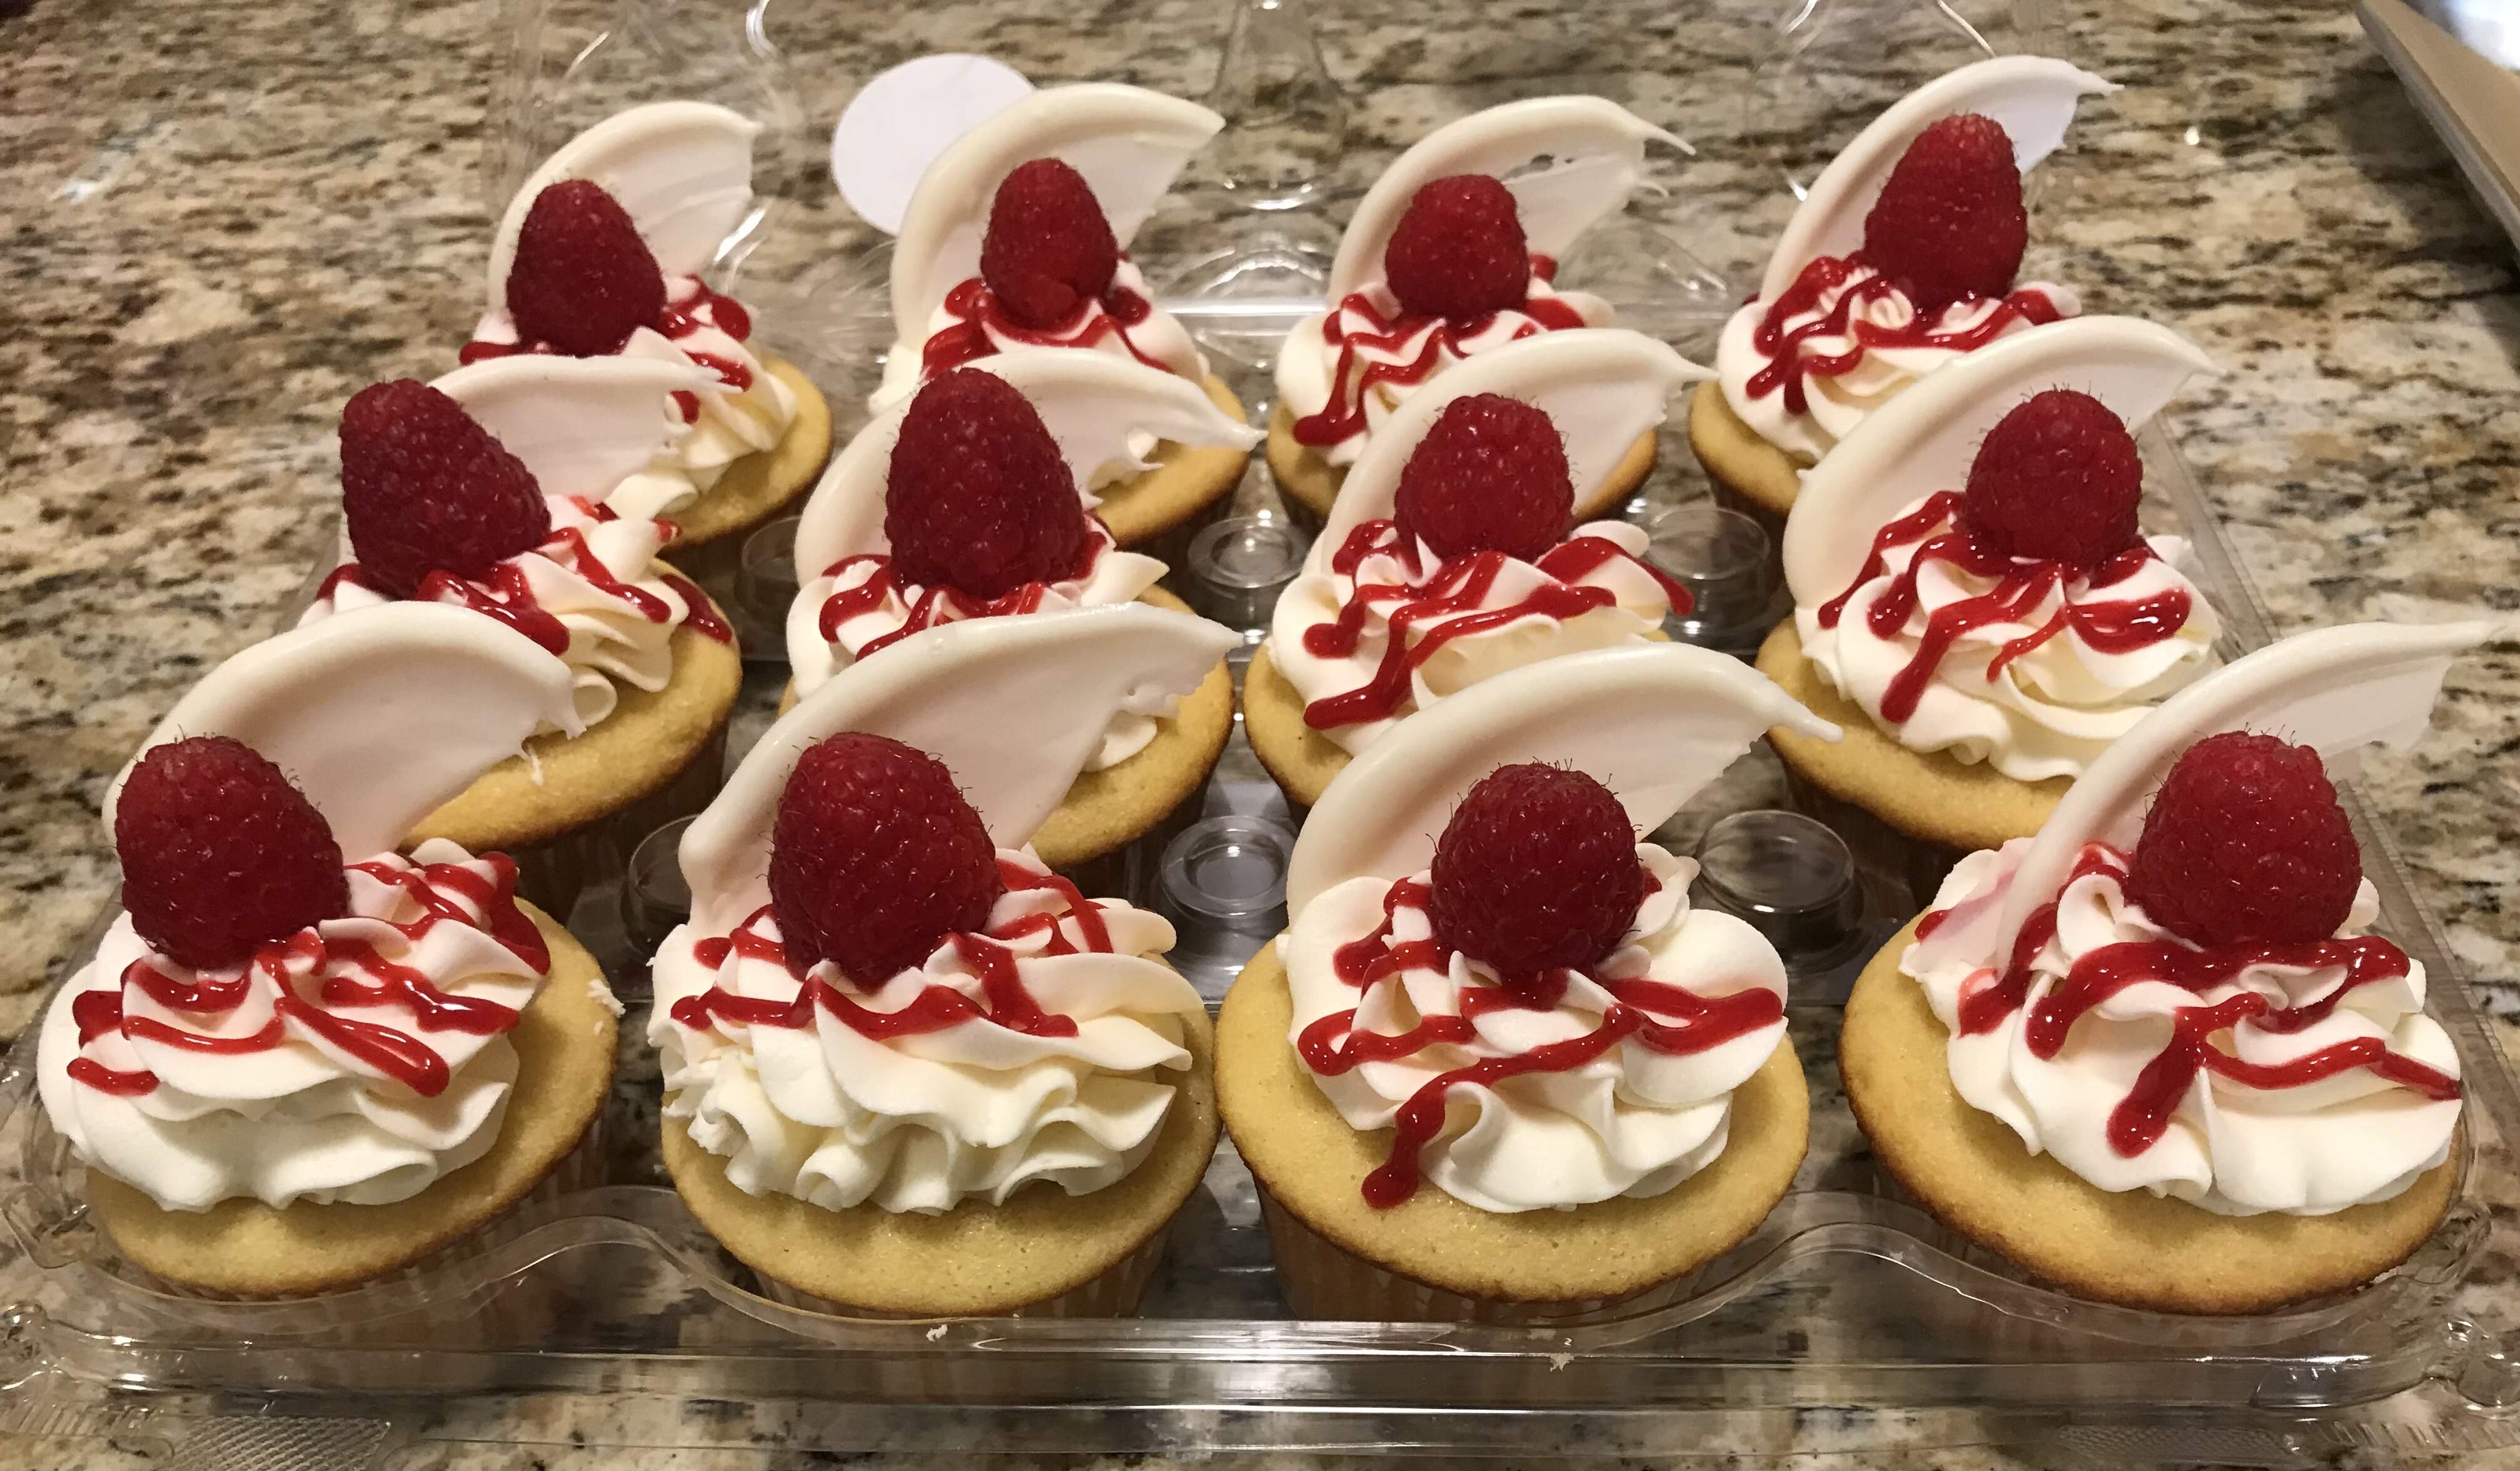 gourmet cupcakes